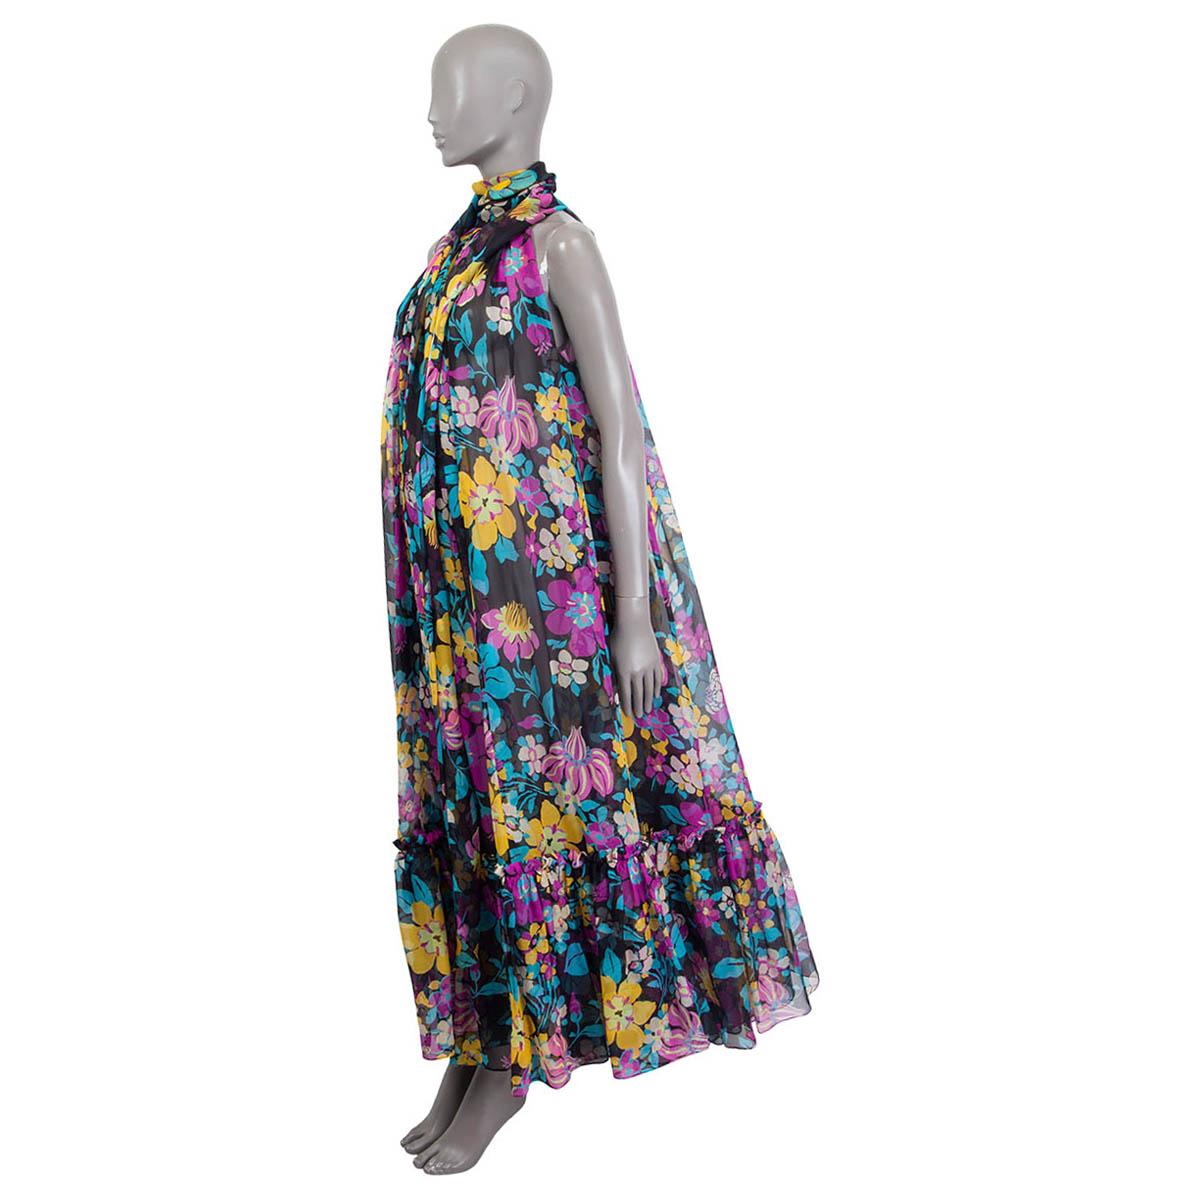 robe porte-cou Saint Laurent 2021 100% authentique en soie noire, jaune, violette, turquoise et blanc cassé. Il présente un ourlet en accordéon et un élégant lien en forme de foulard à l'encolure. Dispose de deux poches fendues sur les côtés et de